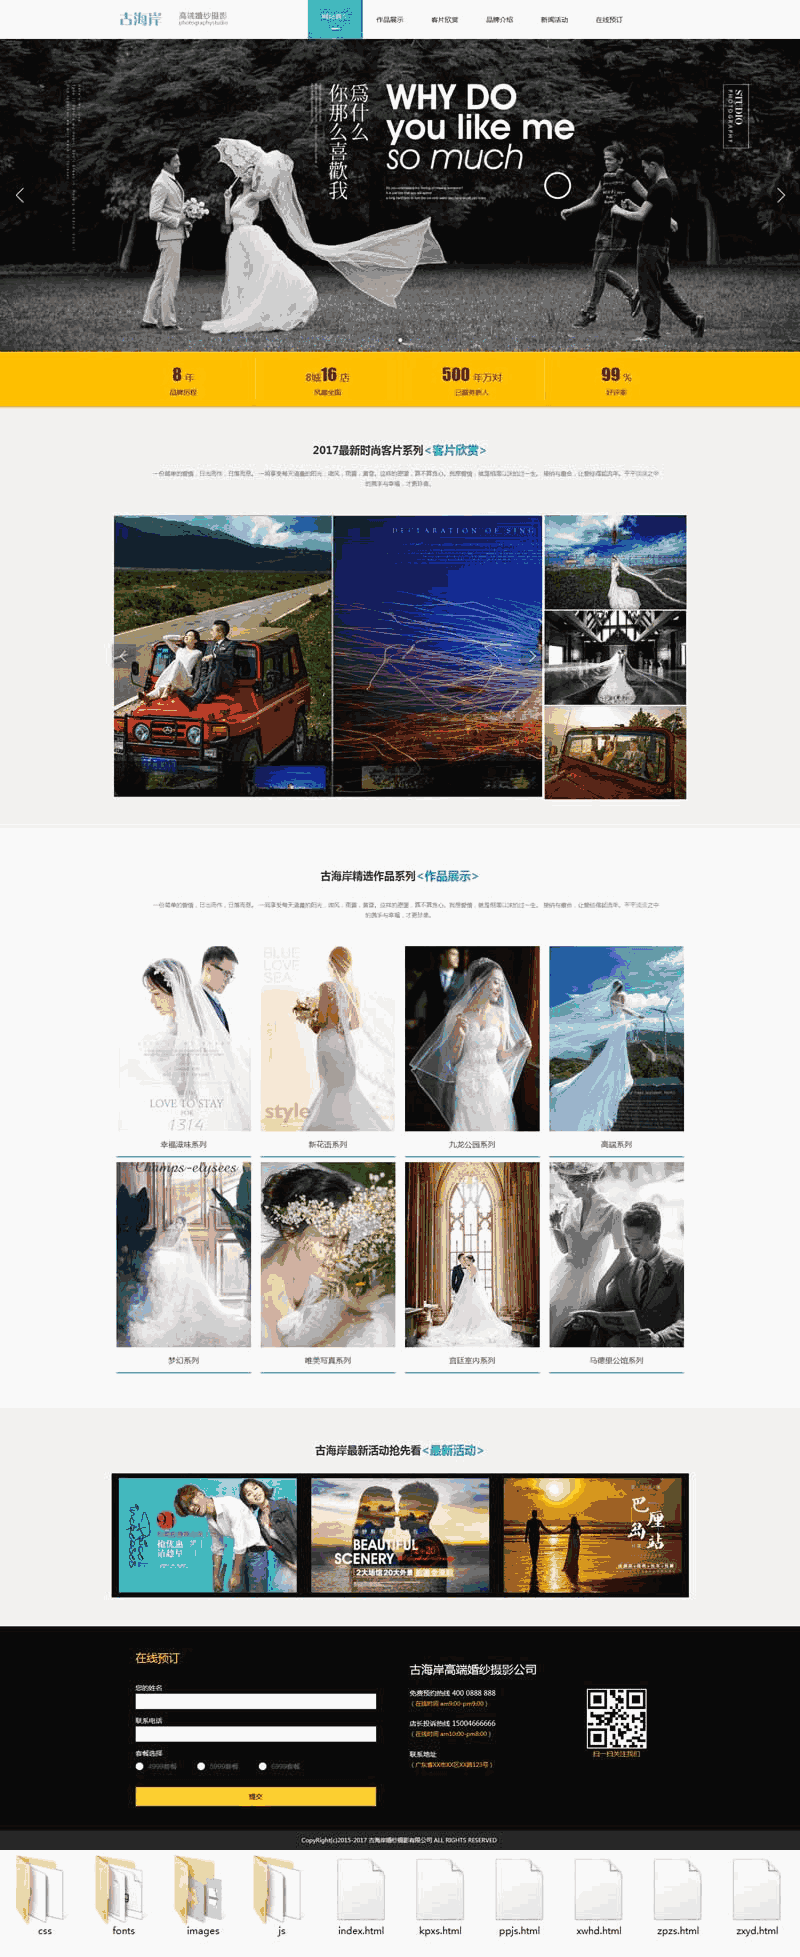 高端婚纱摄影前端WordPress模板主题演示图